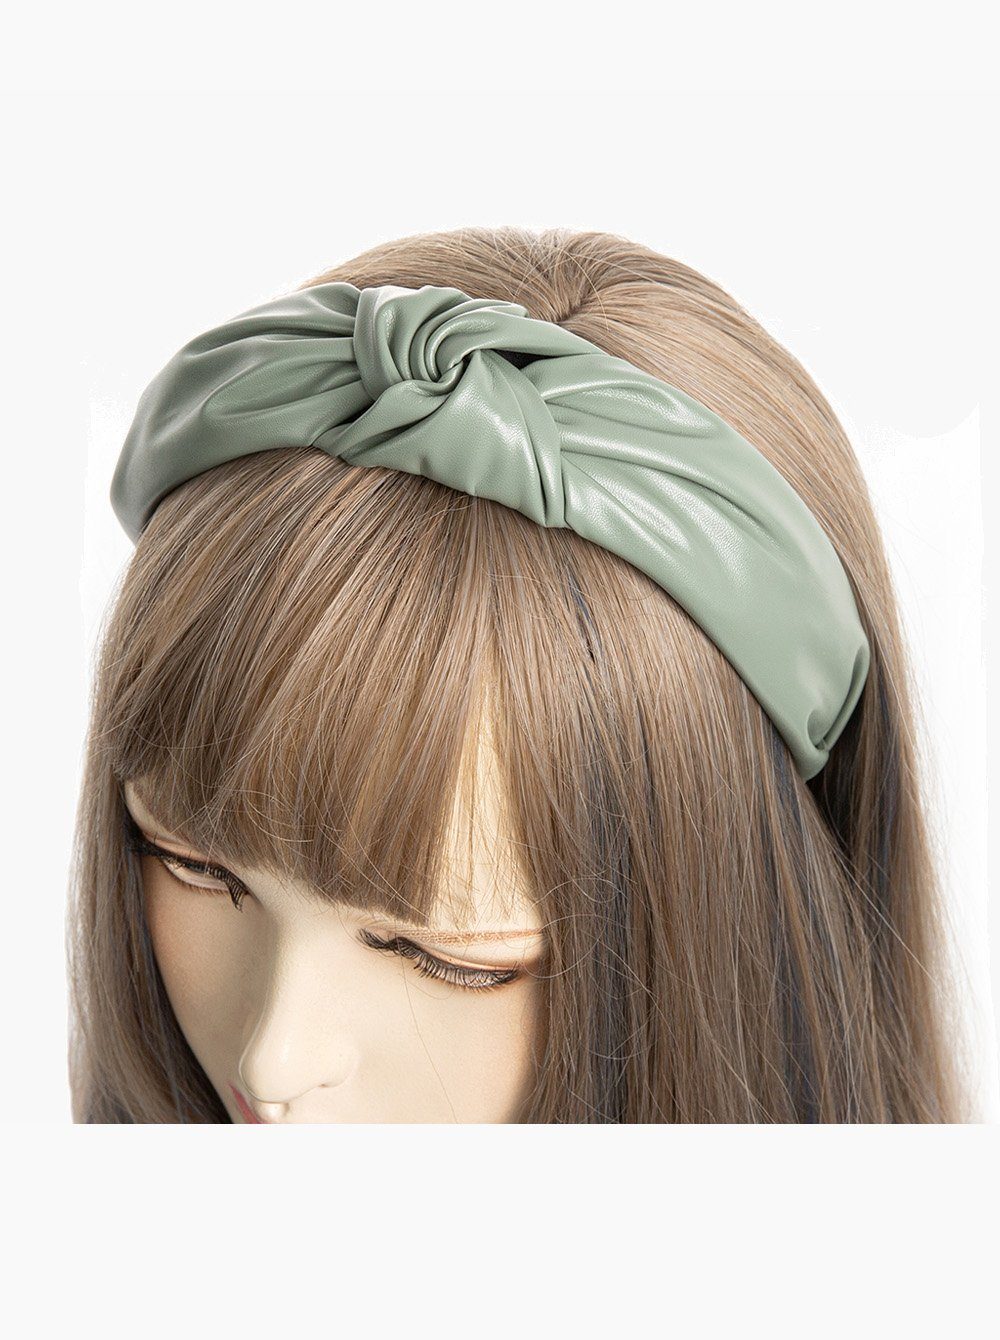 Vintage Haareifen Haarreif Haarreif mit Kunstleder in und Klassische Optik, axy Knoten Damen Graugrün Haarband